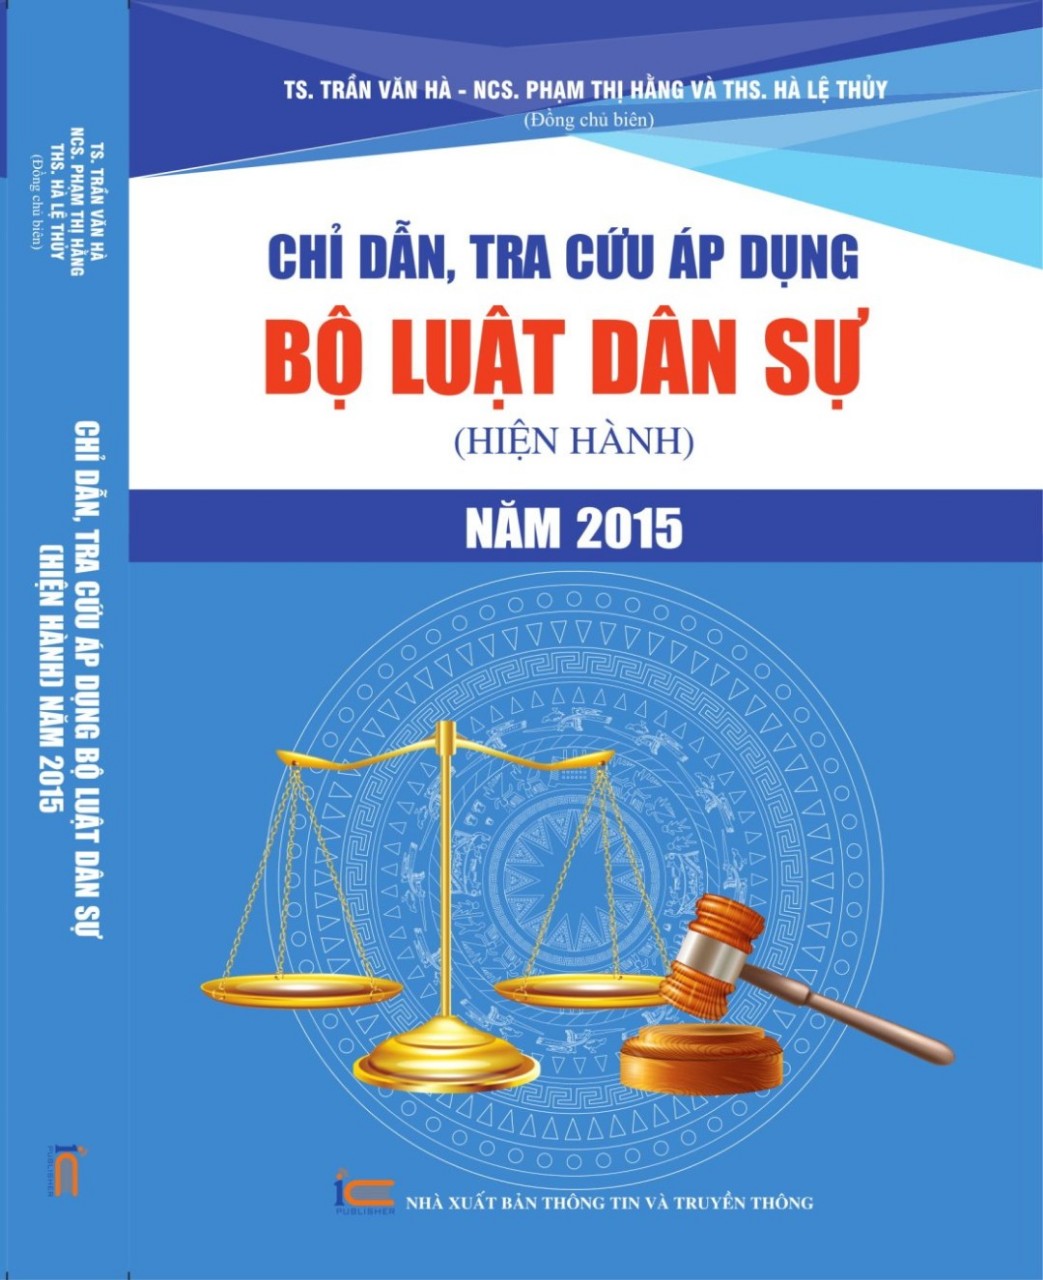 Chỉ dẫn, tra cứu áp dụng Bộ luật Dân sự (hiện hành) năm 2015 